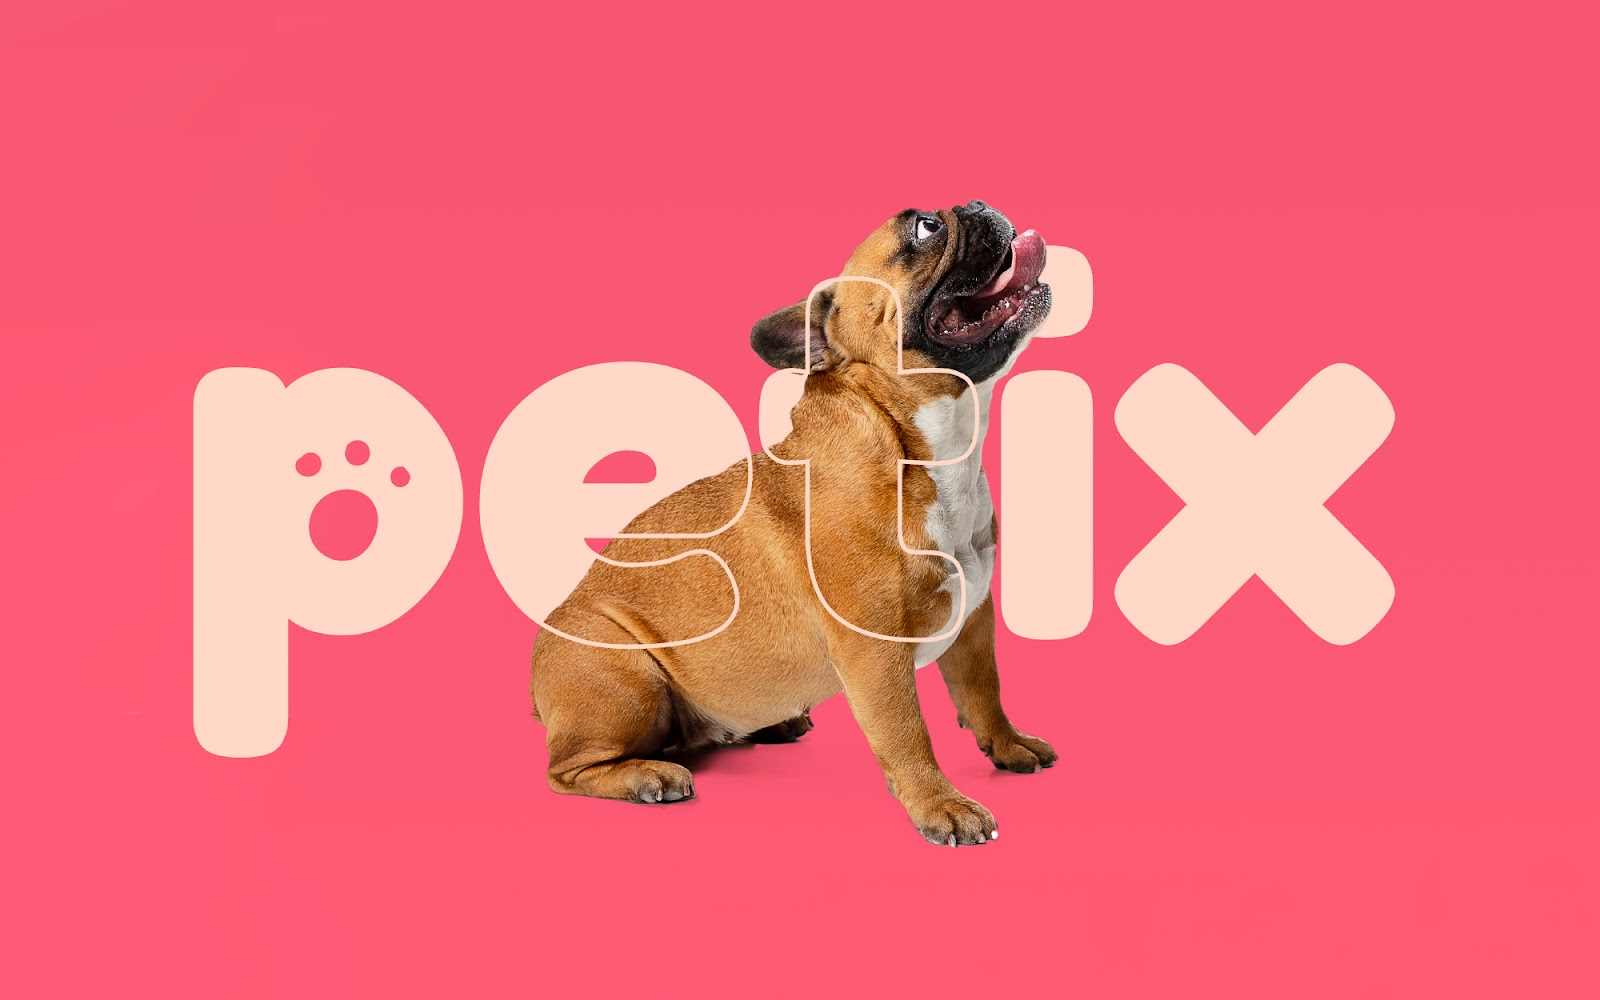 Petix宠物零食品牌包装设计